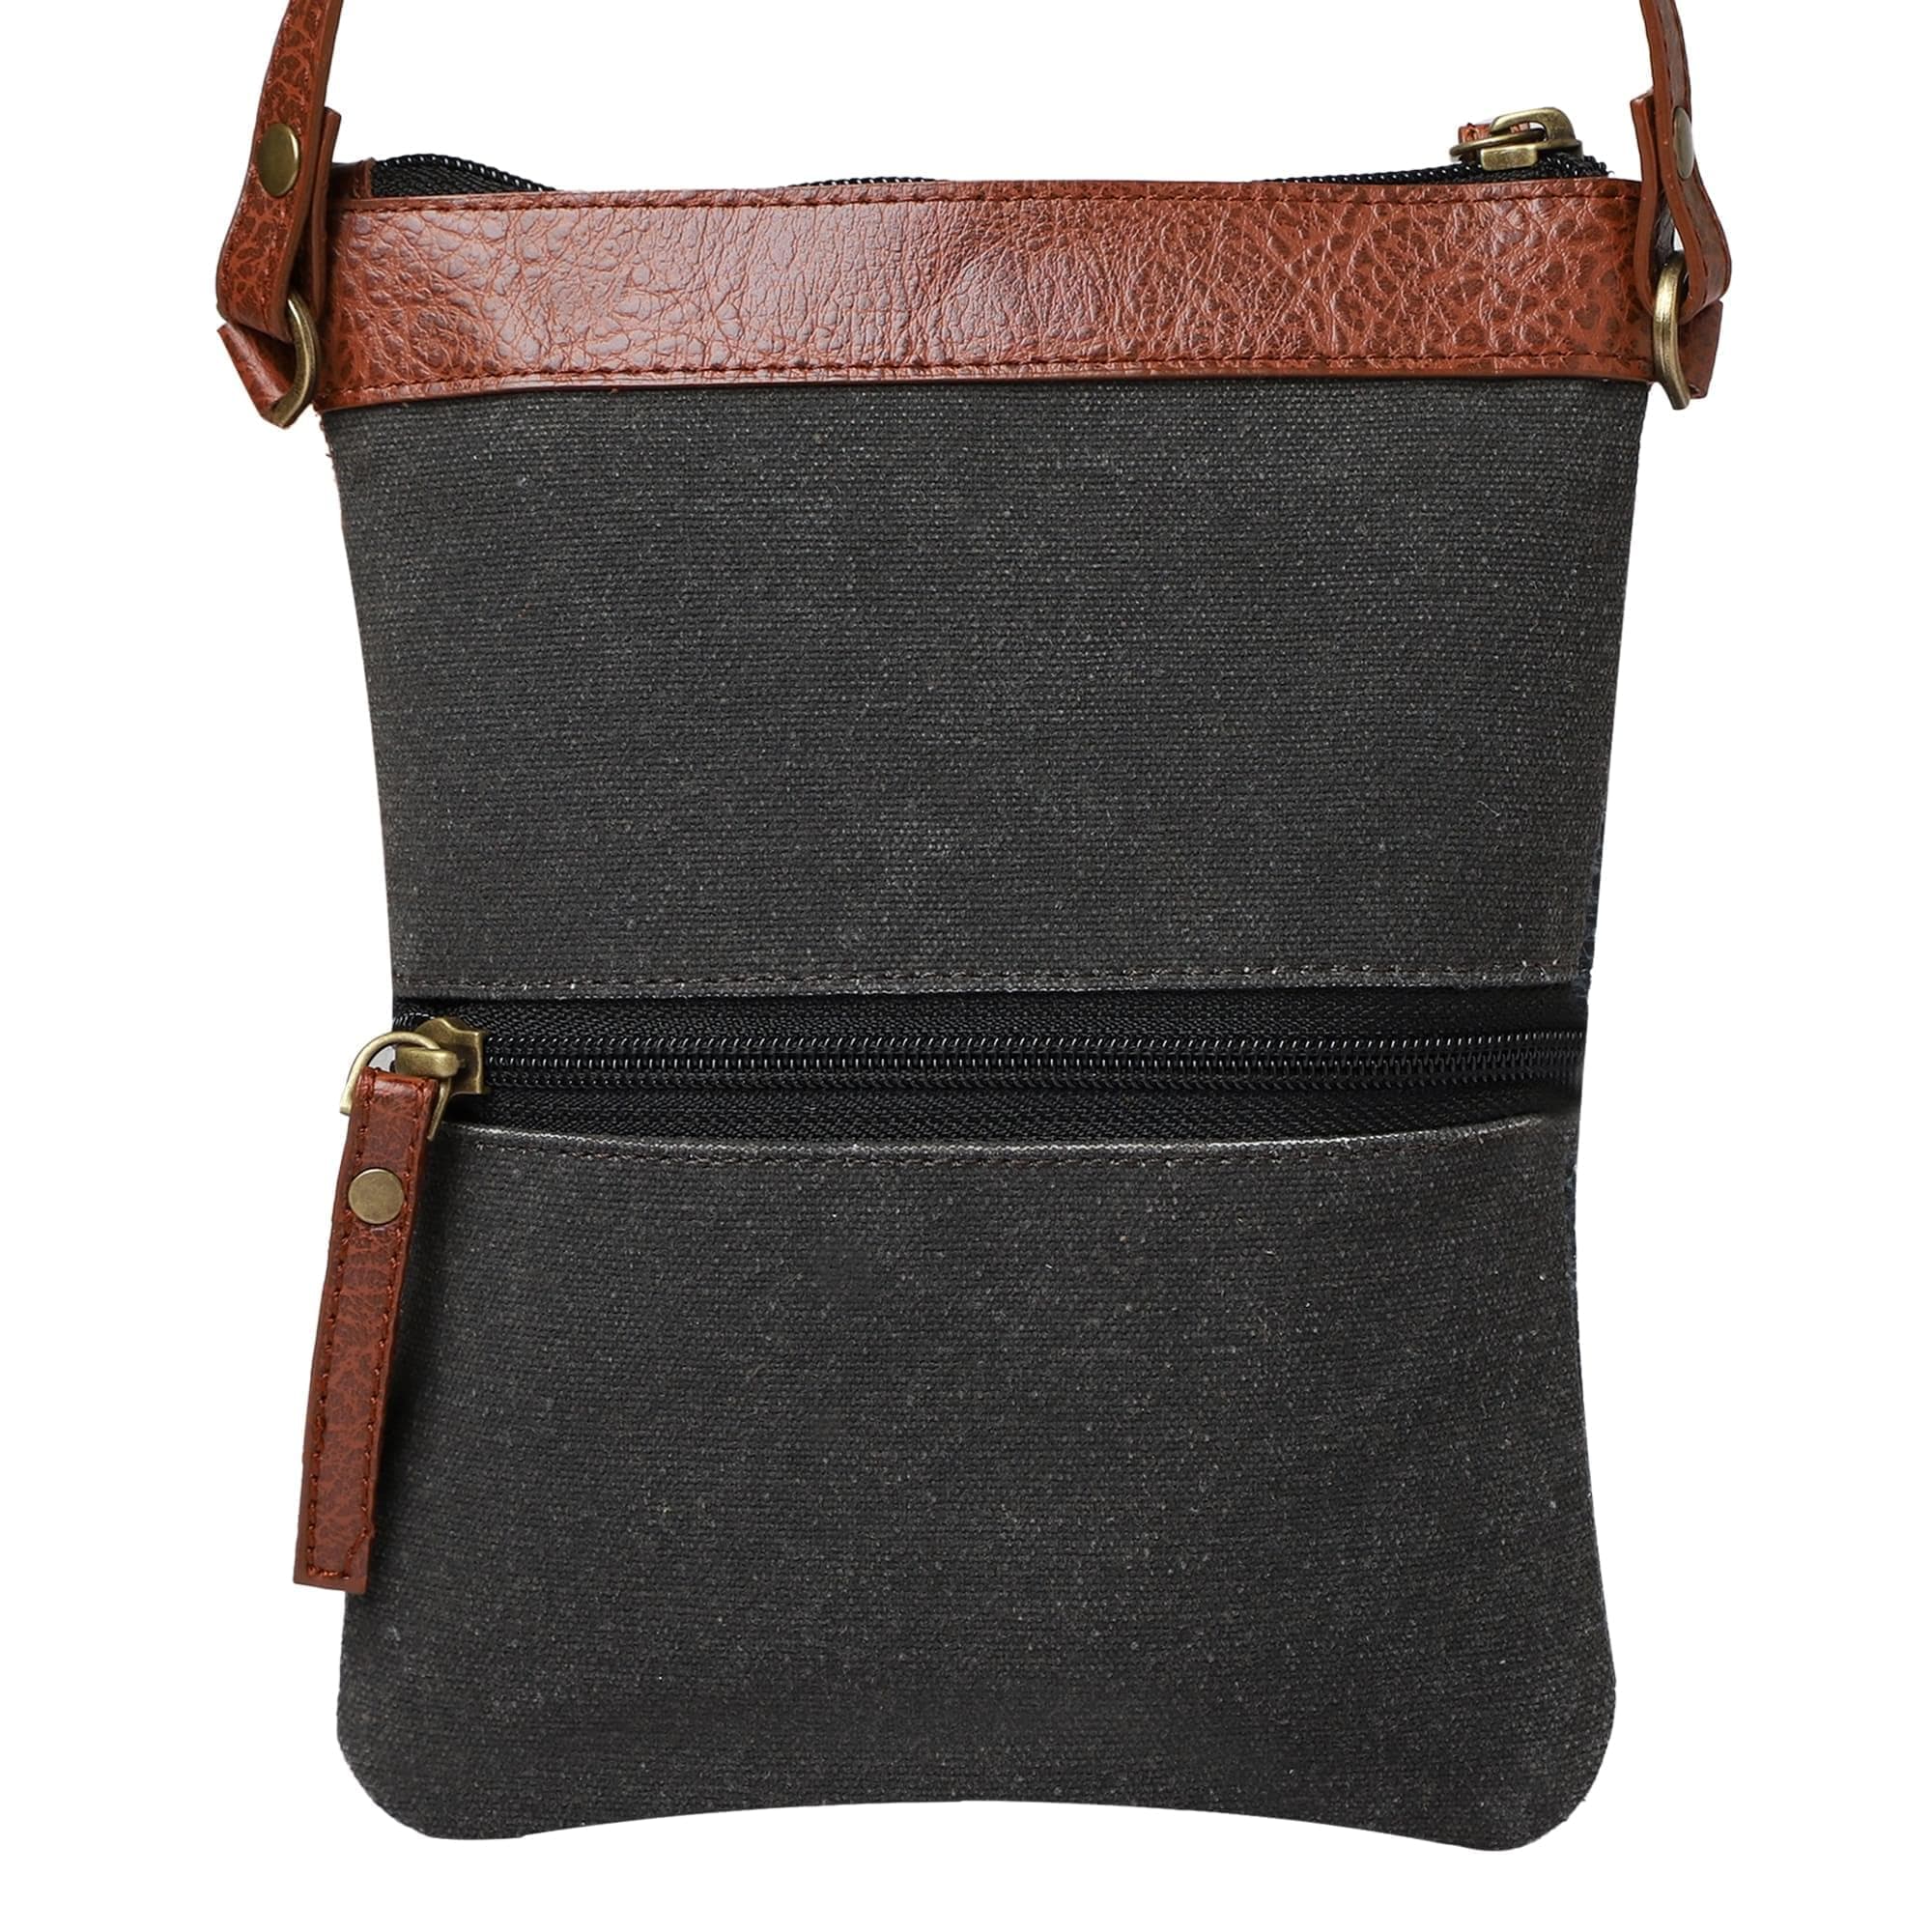 Mona-B Bag Mona B - Small Canvas Messenger Crossbody Bag | Wristlet Bag with Stylish Design for Women (Sloane) Brown